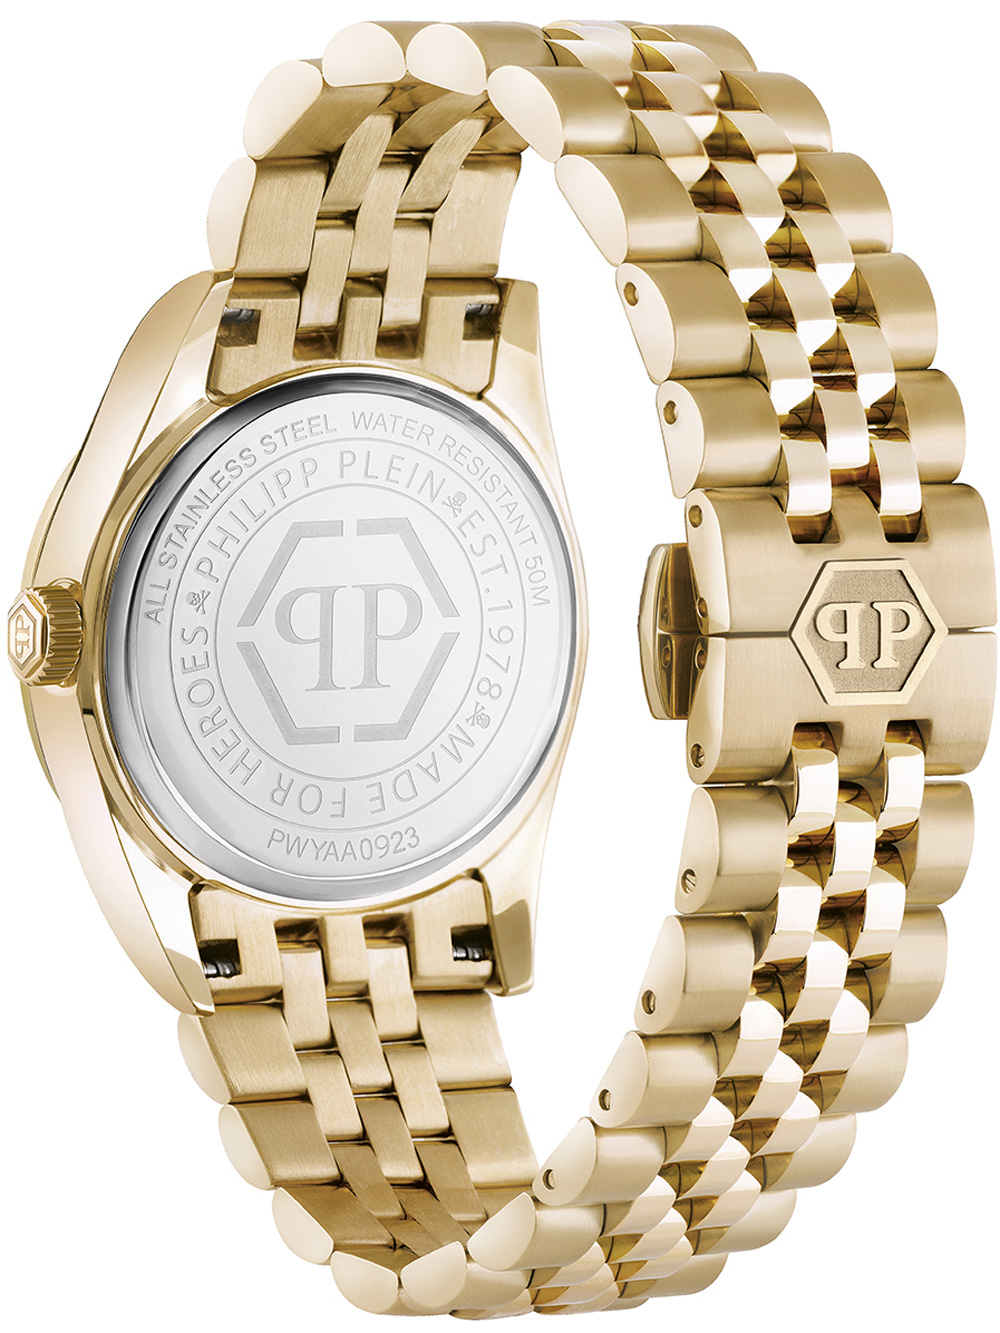 Zegarek damski Philipp Plein PWYAA0923 Street Couture złoty